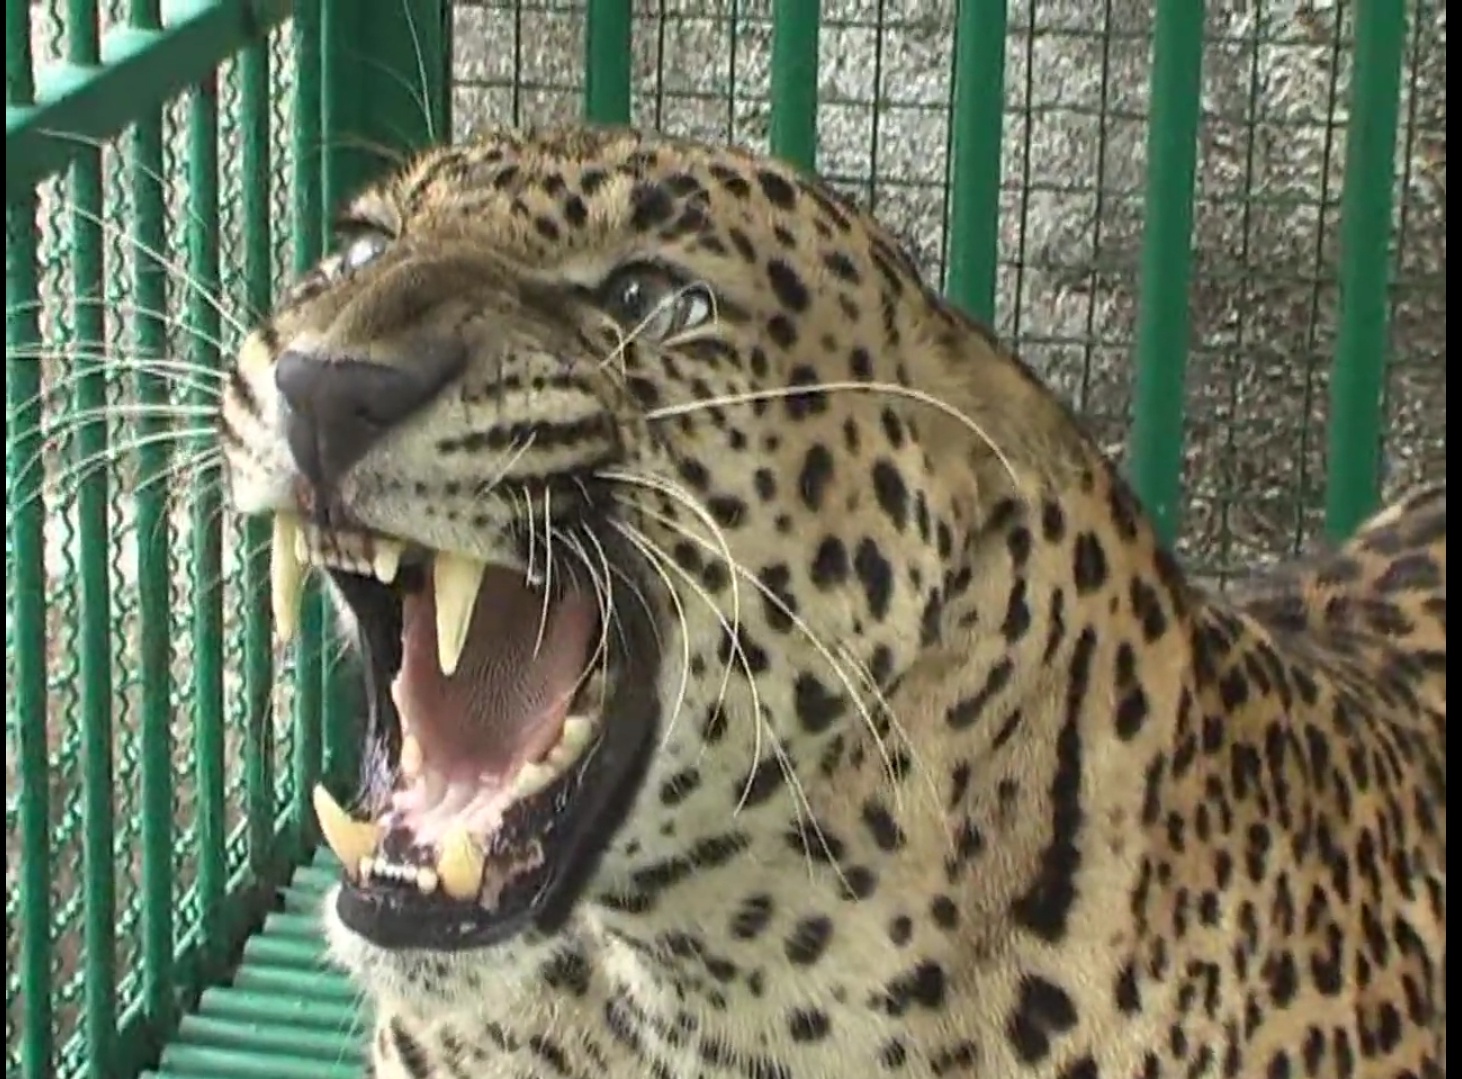 જૂનાગઢ સક્કરબાગ પ્રાણી સંગ્રહાલયમાંથી 35 દીપડાઓને જામનગરના ઝૂમાં ખસેડાશે